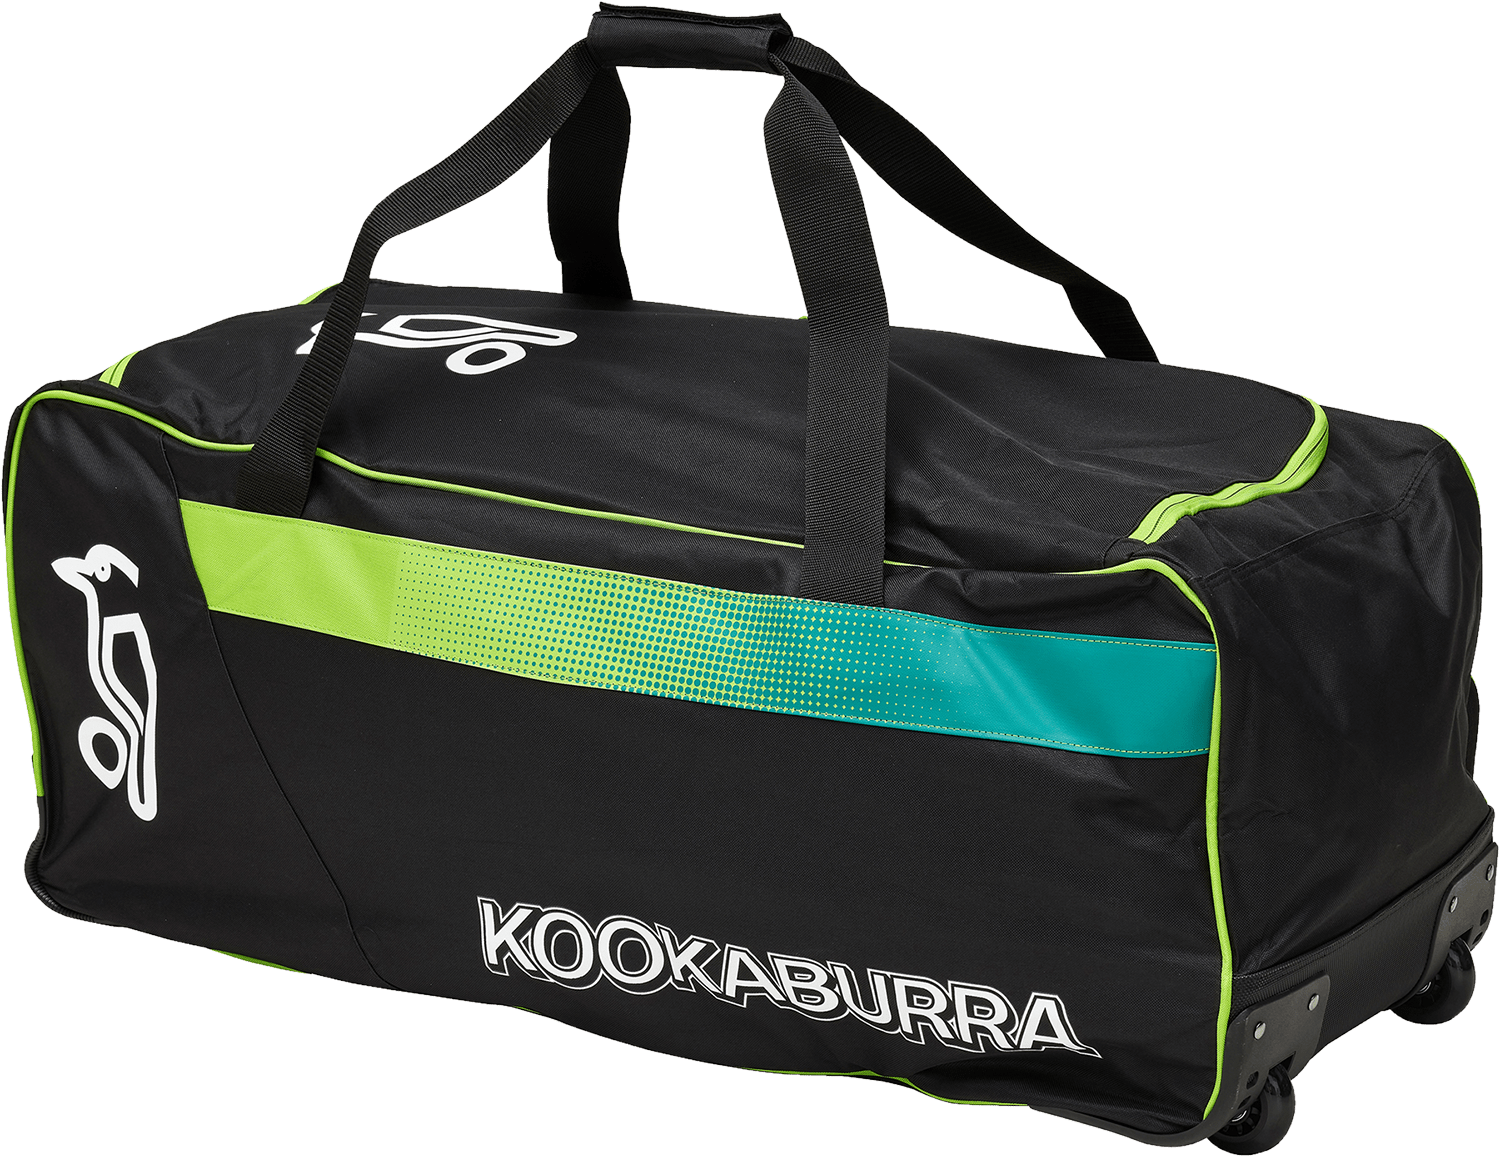 Kookaburra Cricket Bags Kookaburra 3.0 Wheelie Cricket Bag